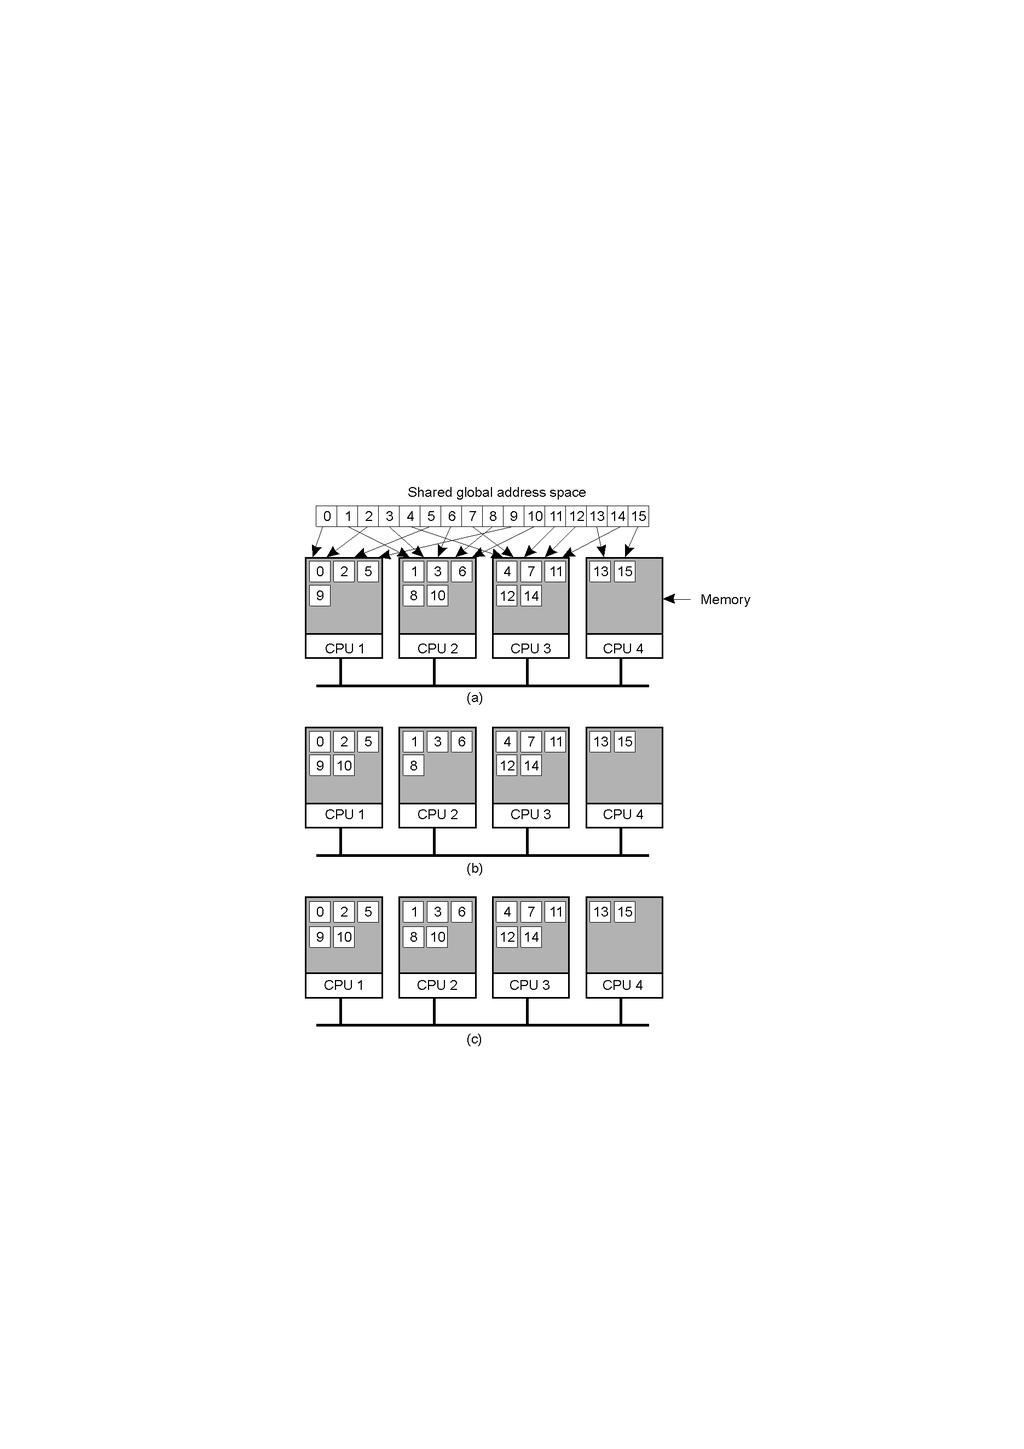 Sistema distribuído de memória compartilhada a) Páginas de espaços de endereços distribuídas entre quatro máquinas b)